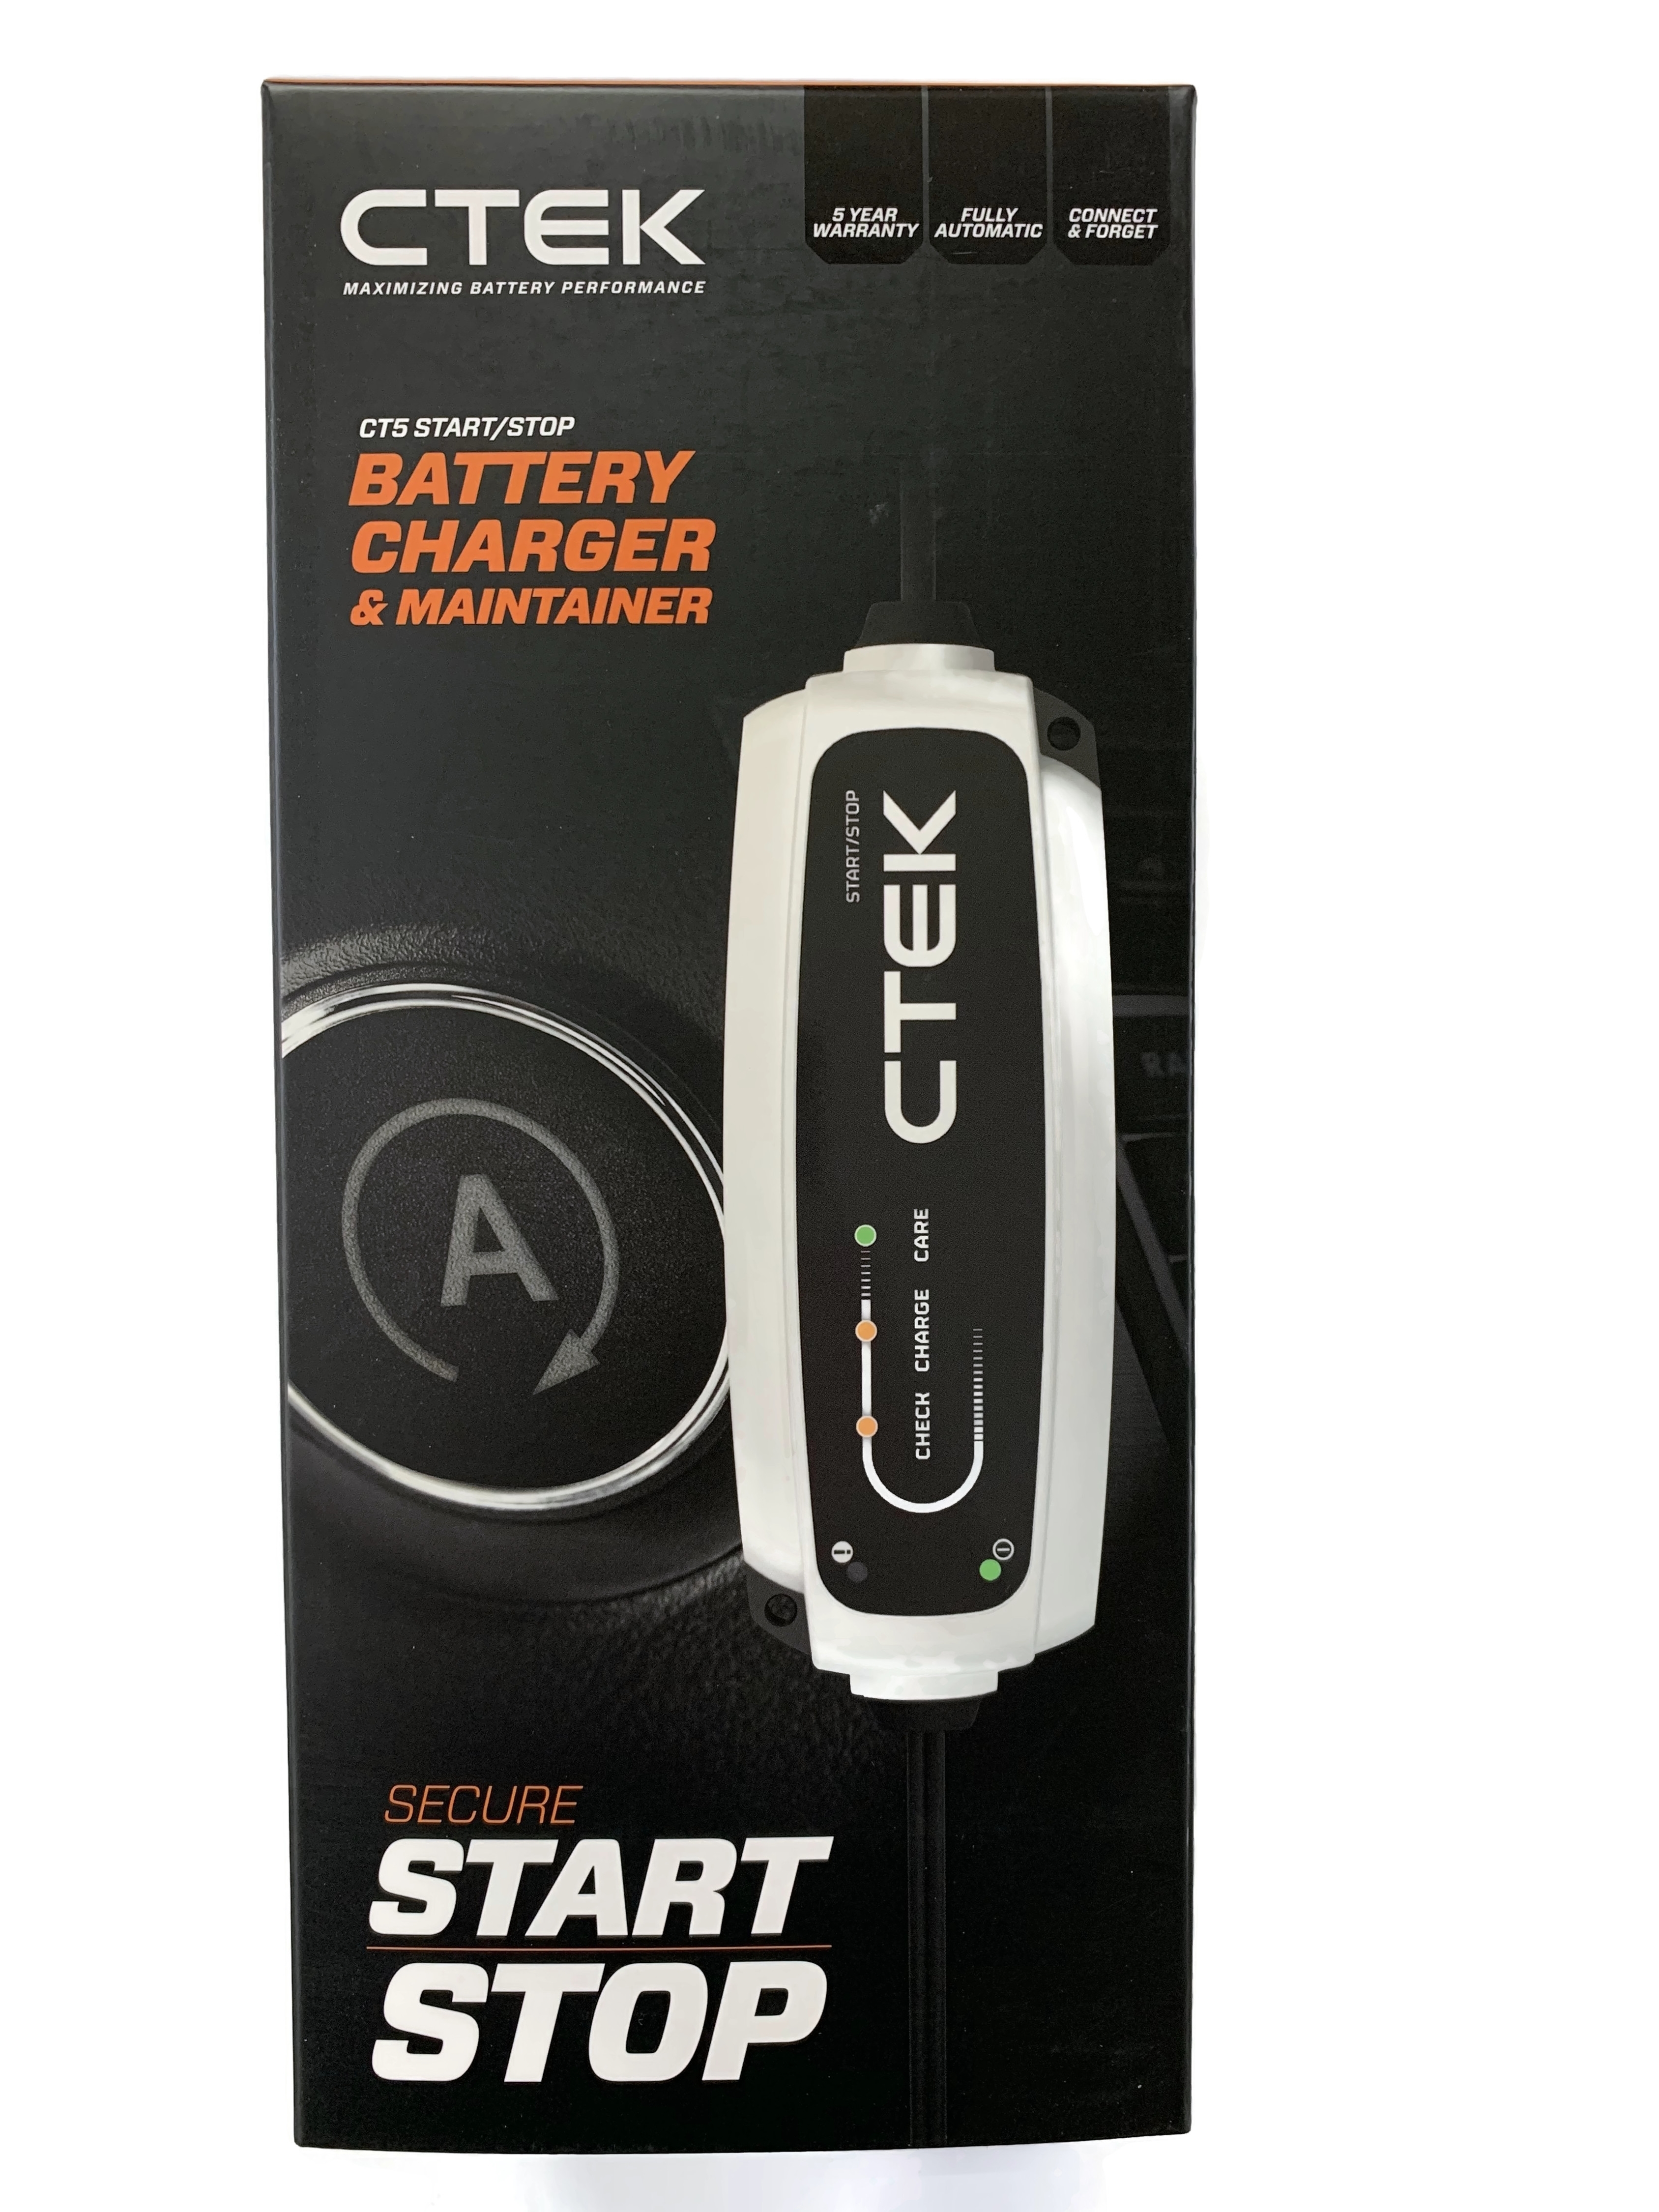 CTEK Batterie Ladegerät CT5 Start/Stop Batterieladegerät